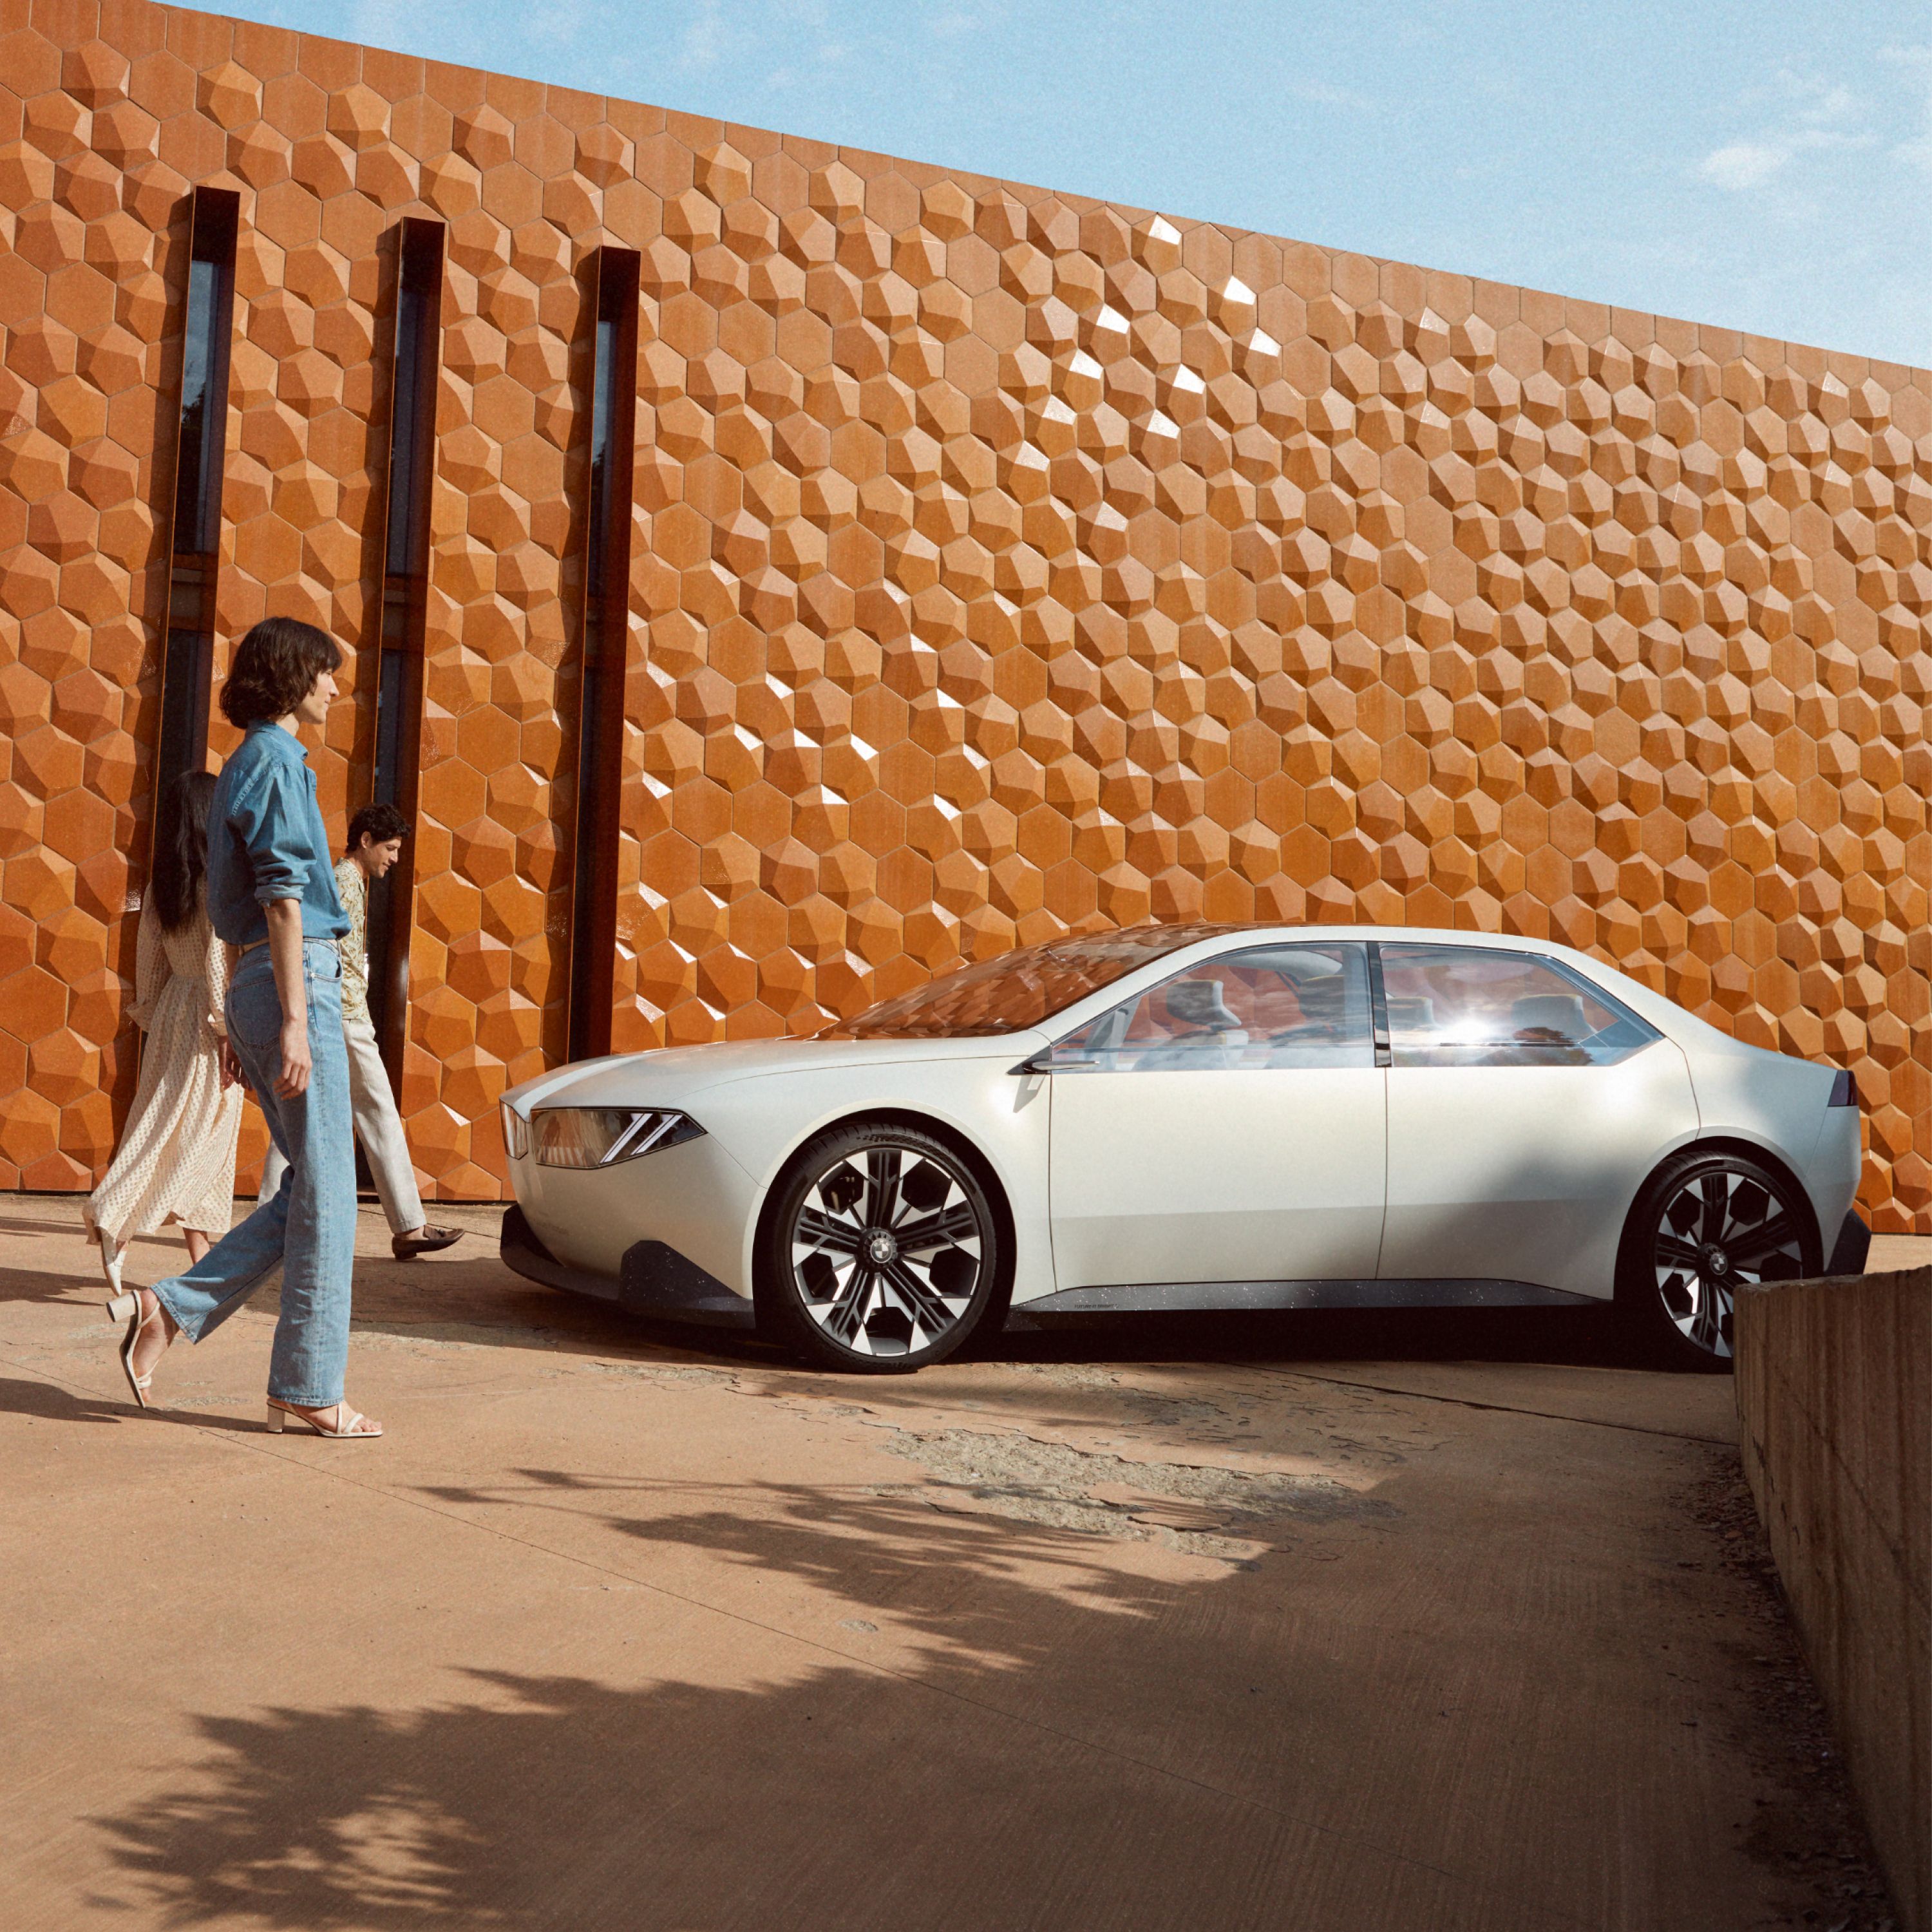 BMW Vision Neue Klasse прототип 2023 екстериор, 4/5 изглед отстрани, паркирано пред стена, с жена 